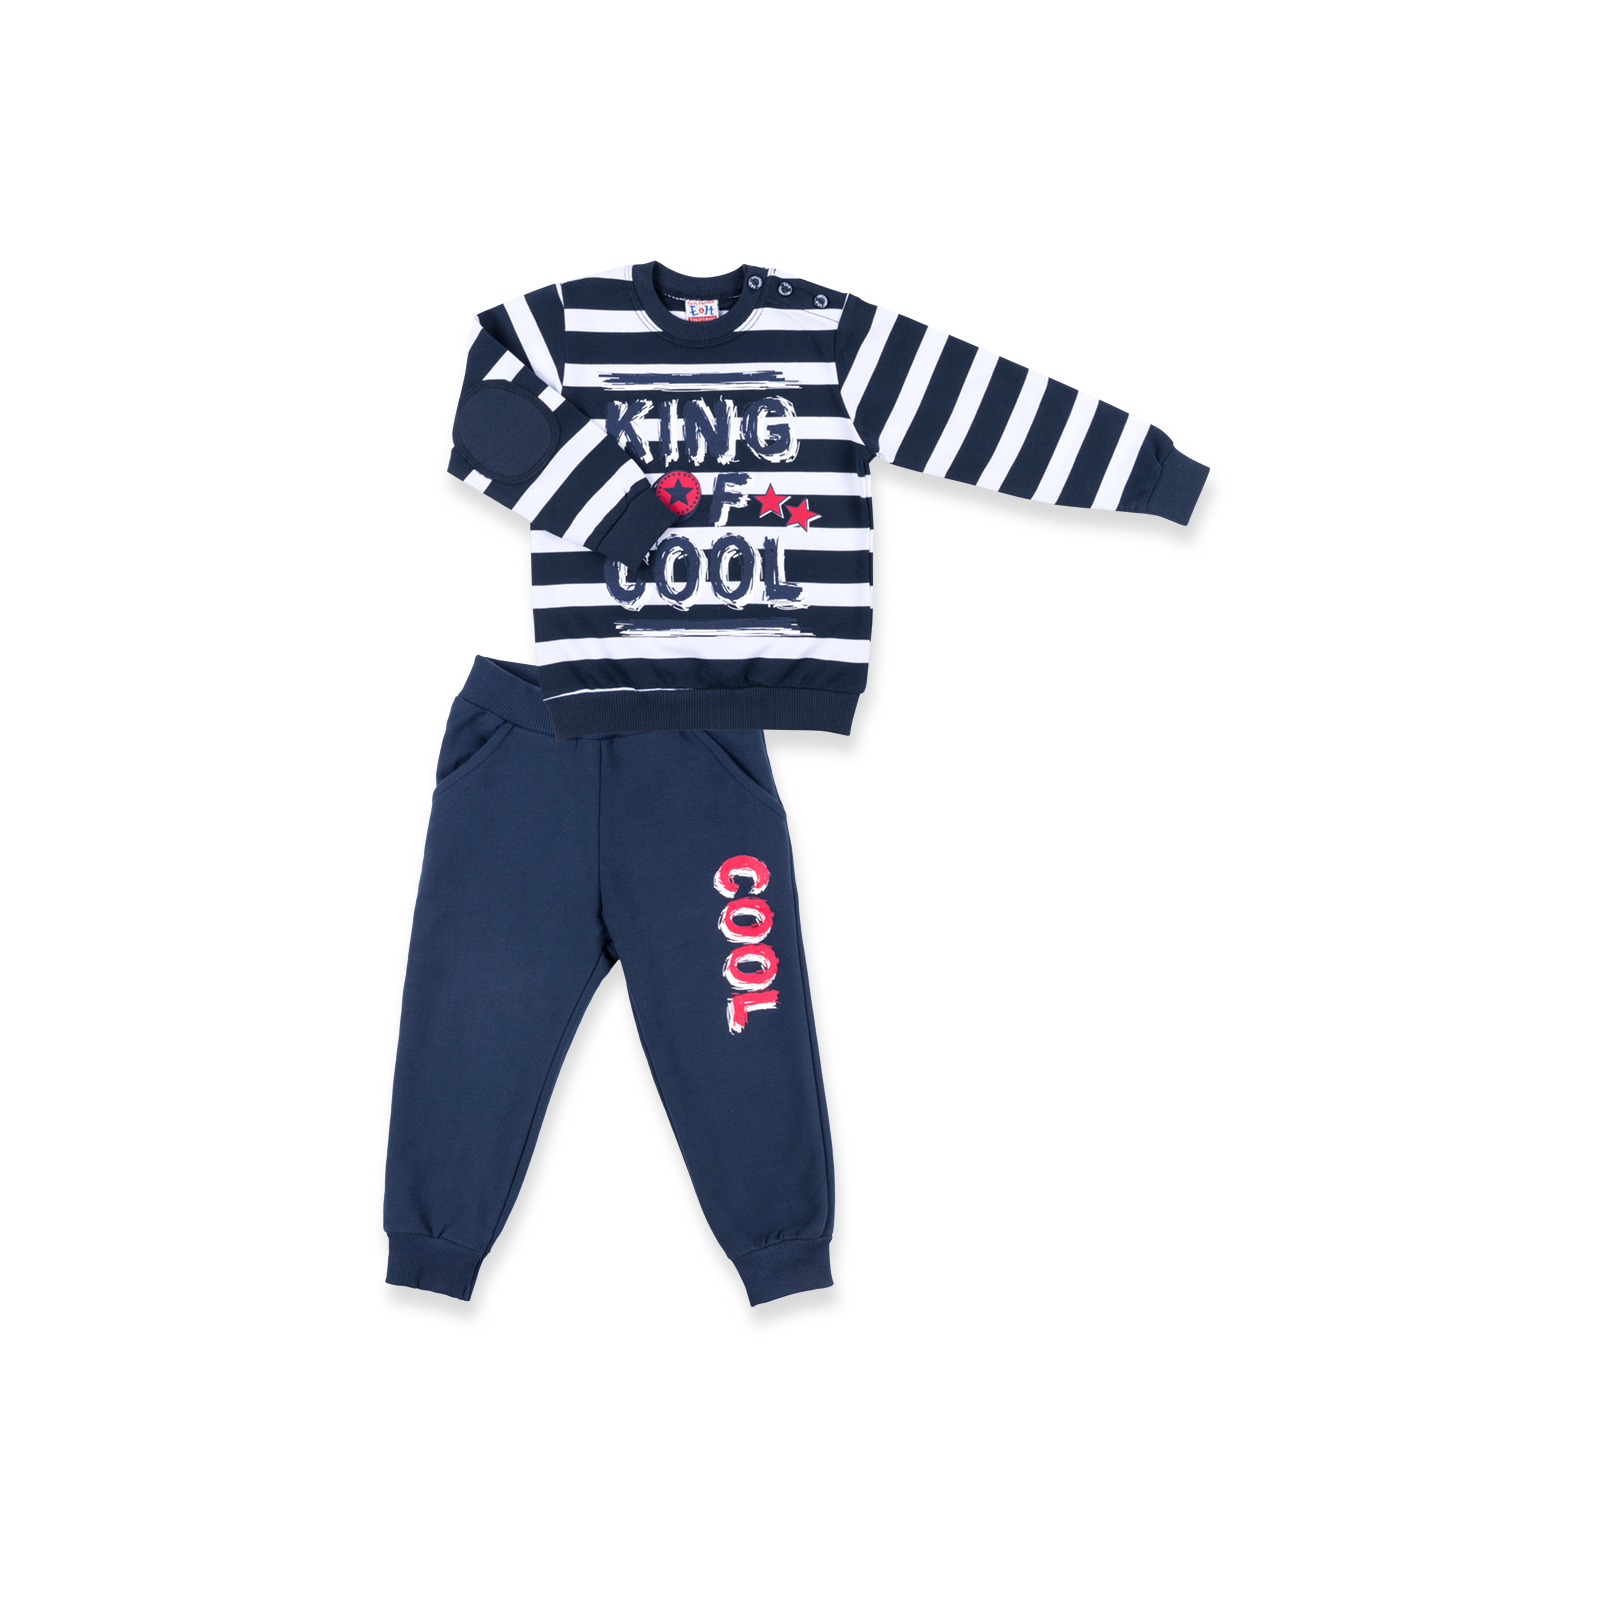 Набор детской одежды Breeze "KING OF COOL" (8632-92B-blue)